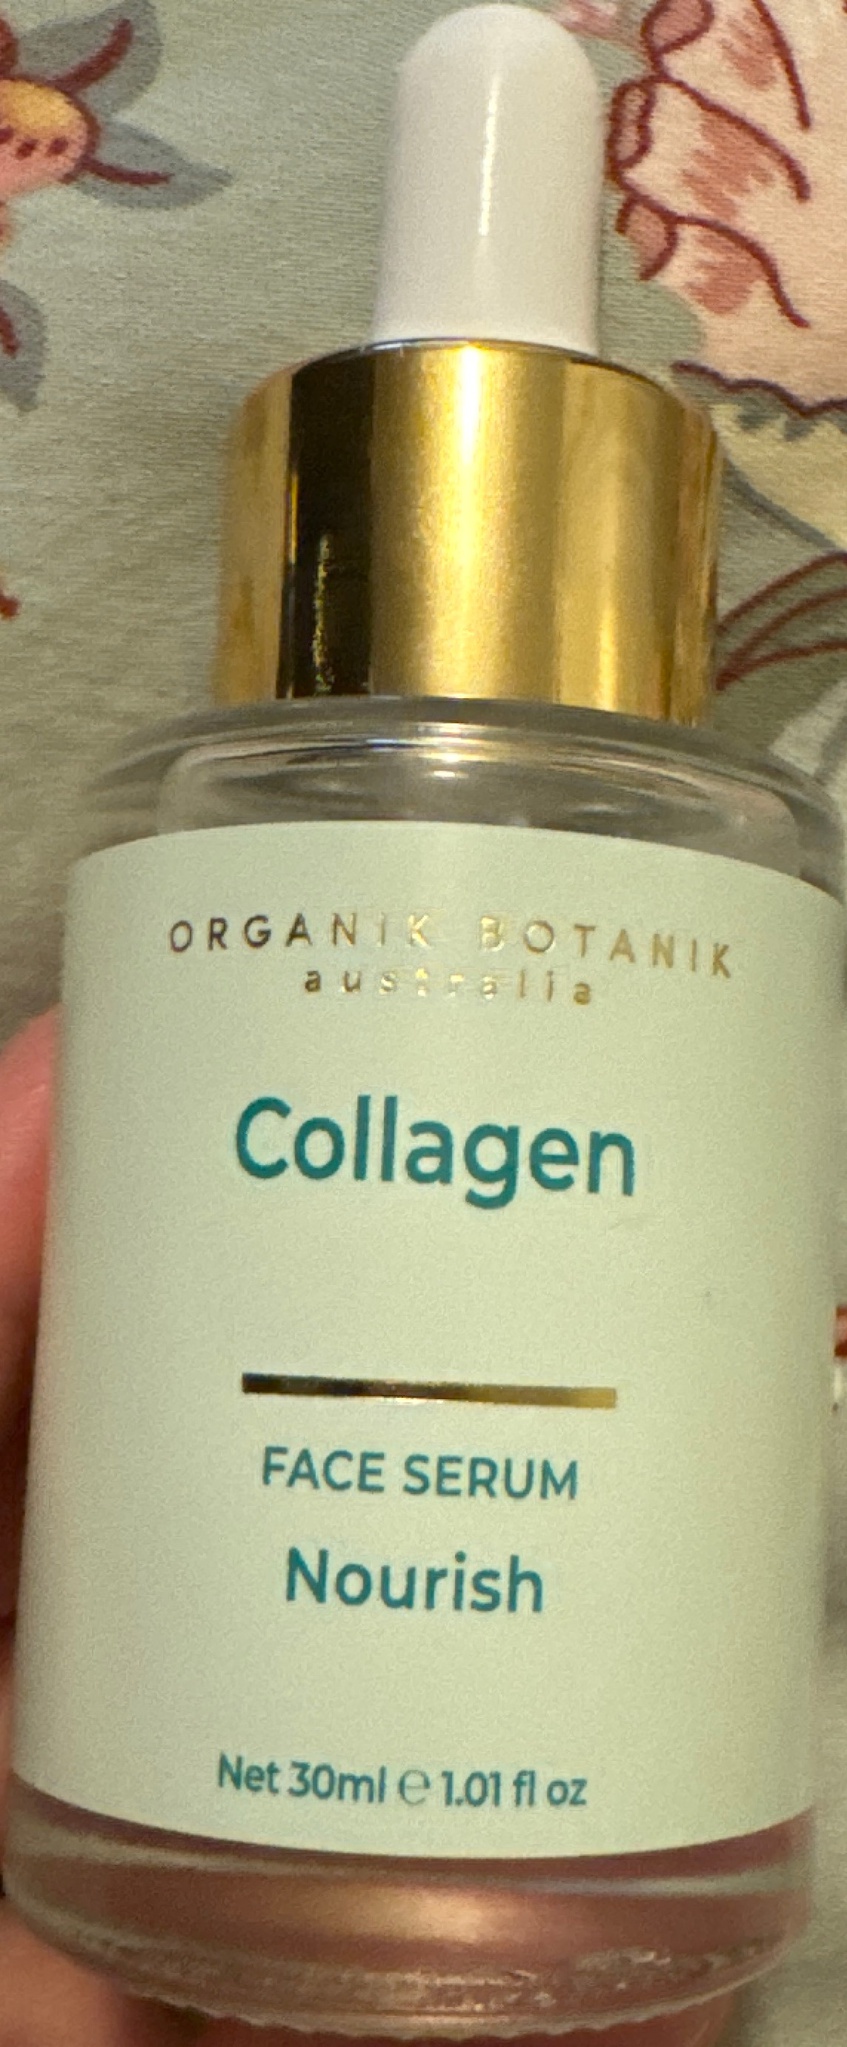 Organik botanik Collagen Serum